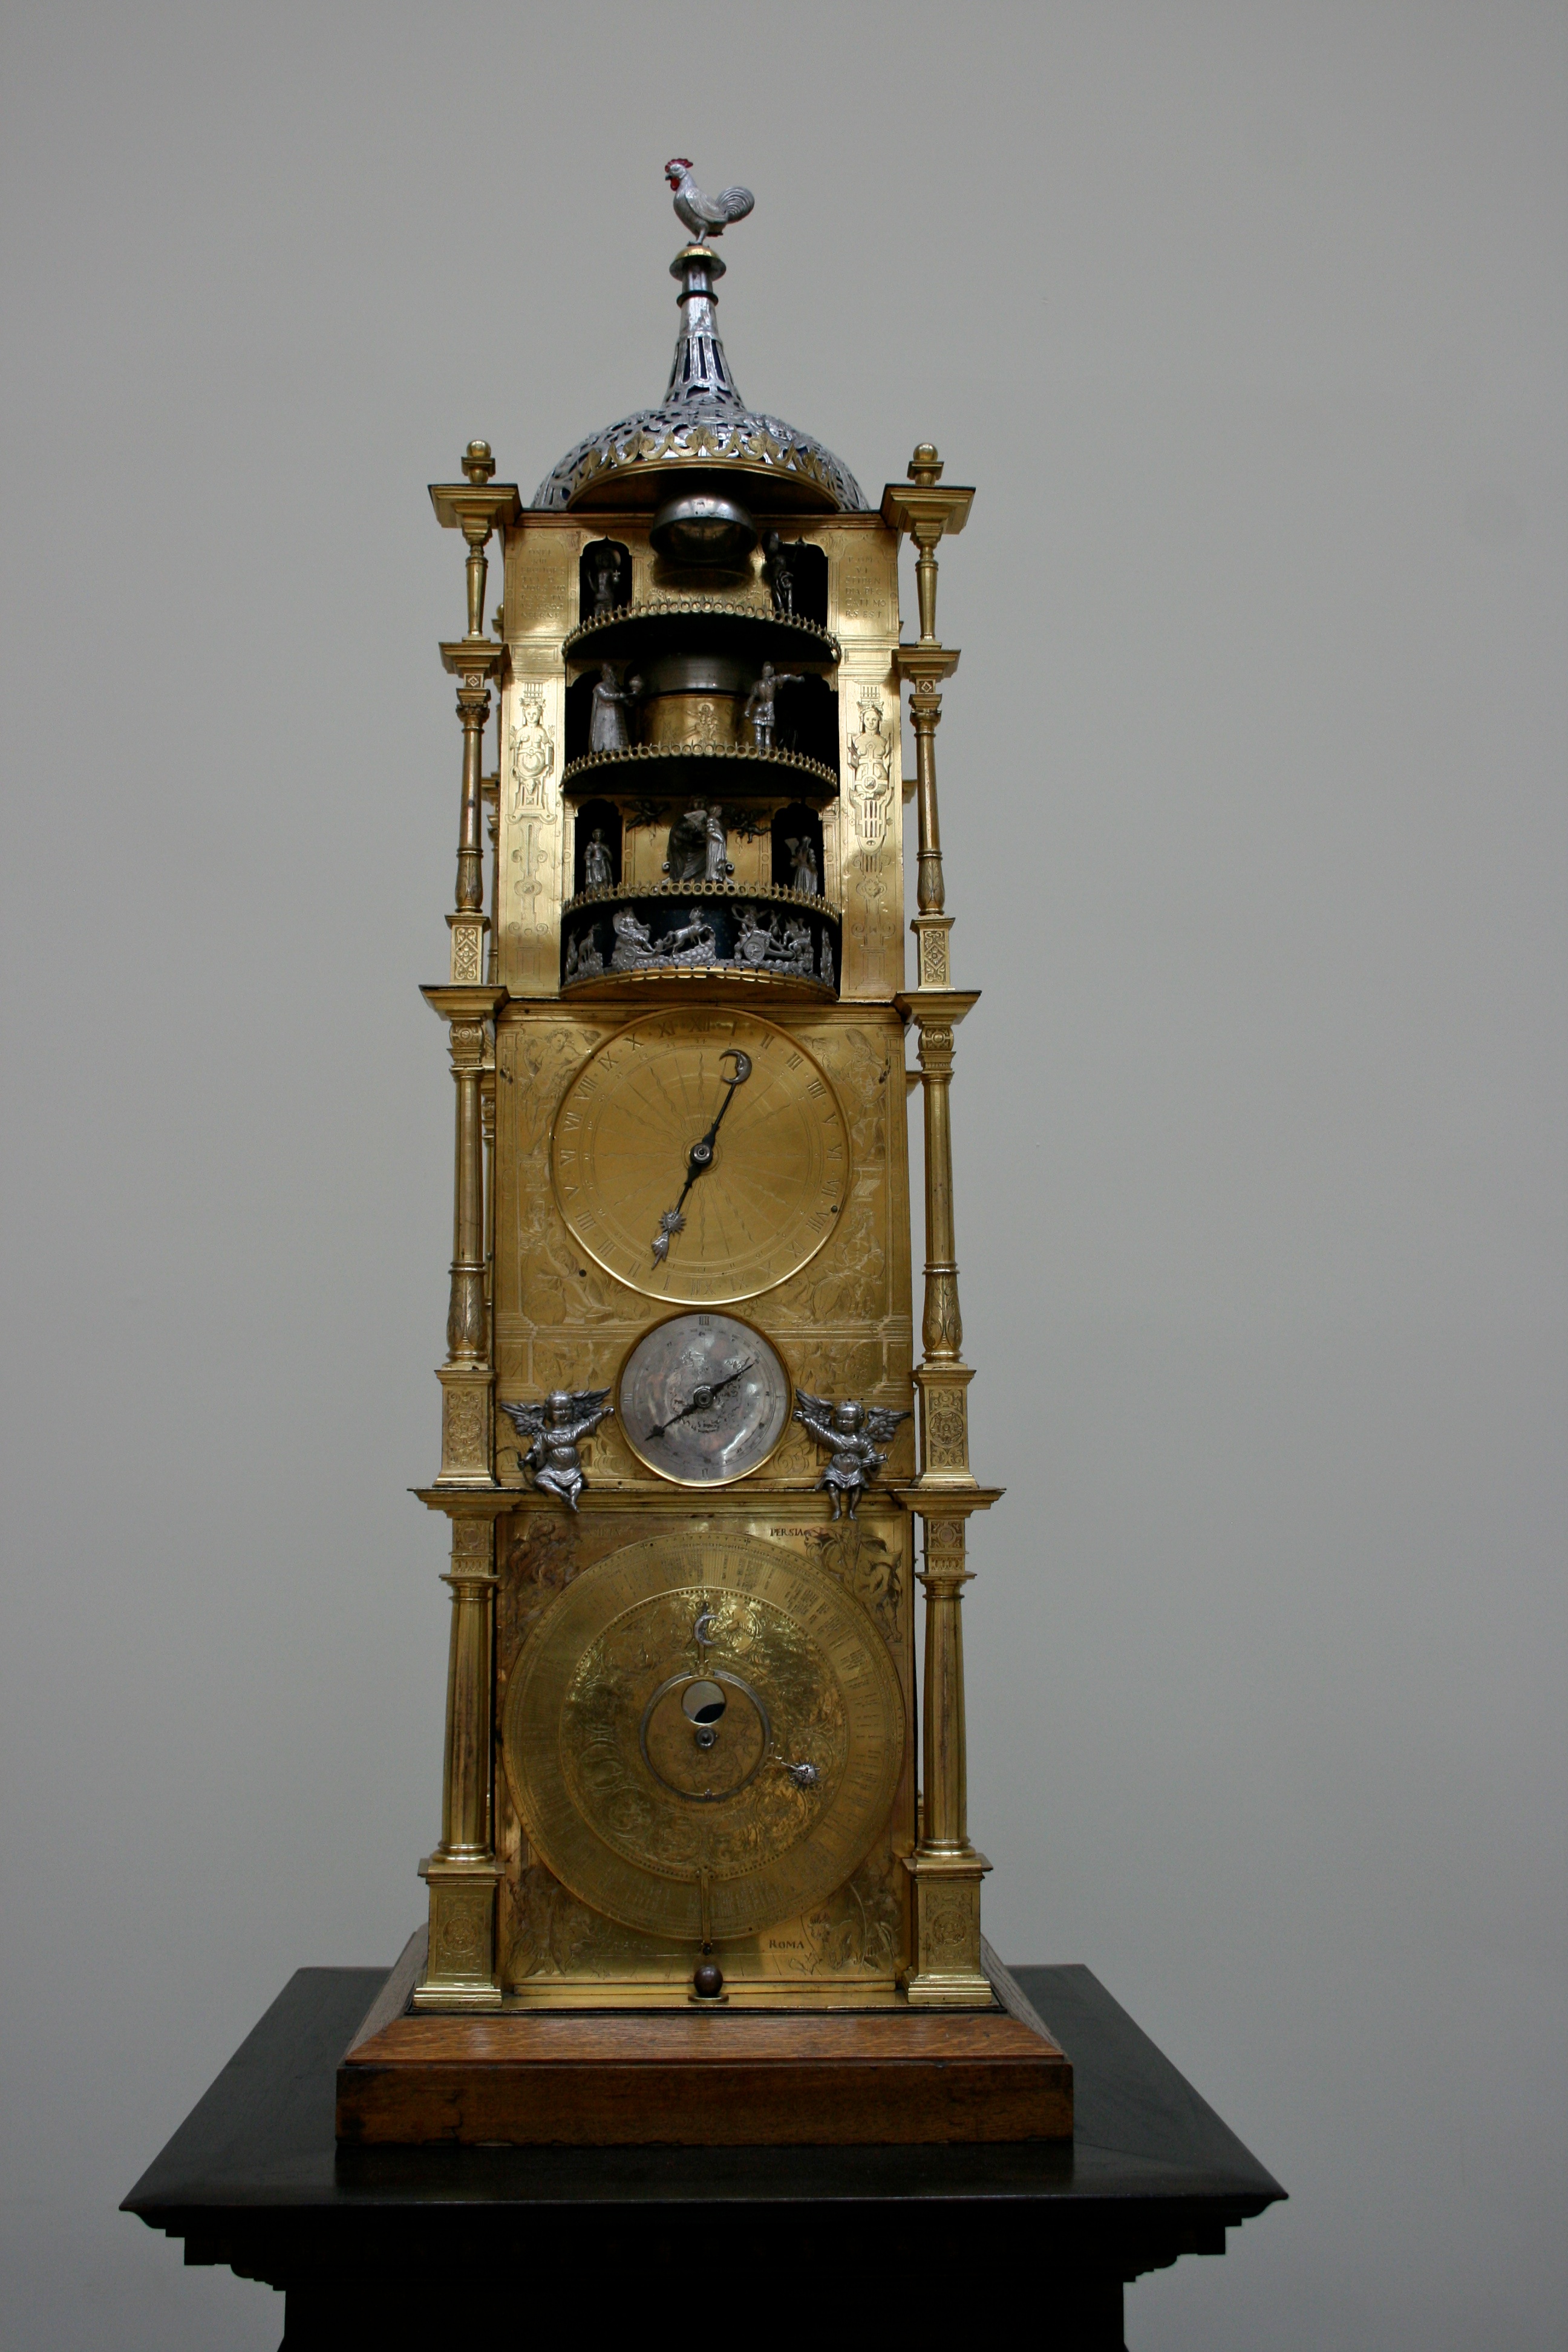 Monumental carrilion clock, British Museum